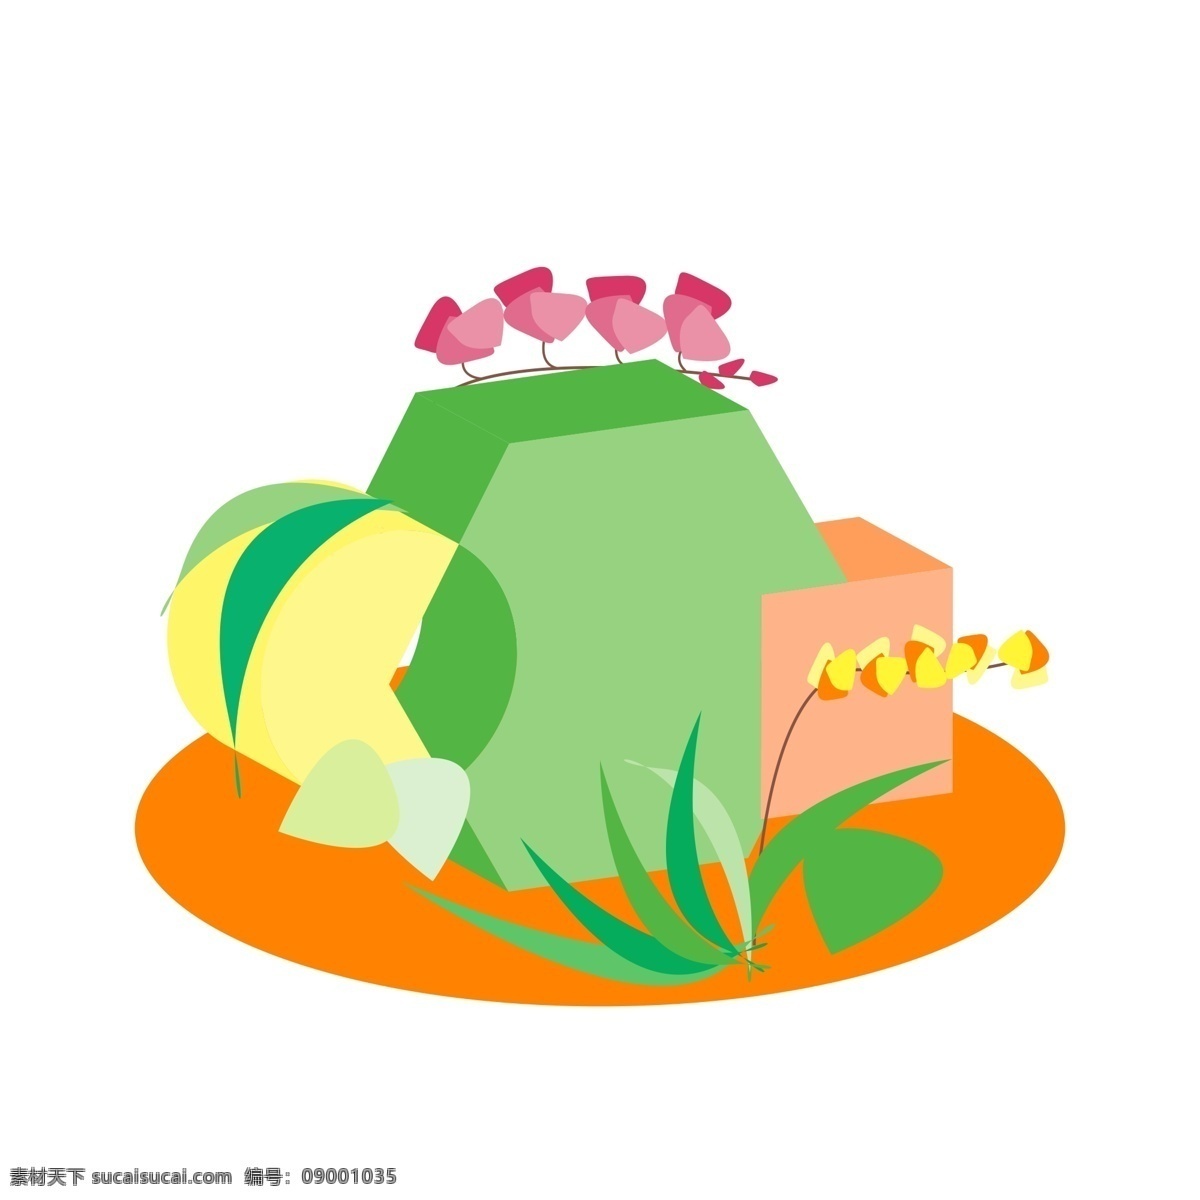 原创 五边形 绿色 立体 装饰 边框 利用 植物 叶子 元素 三级头 纹理边框